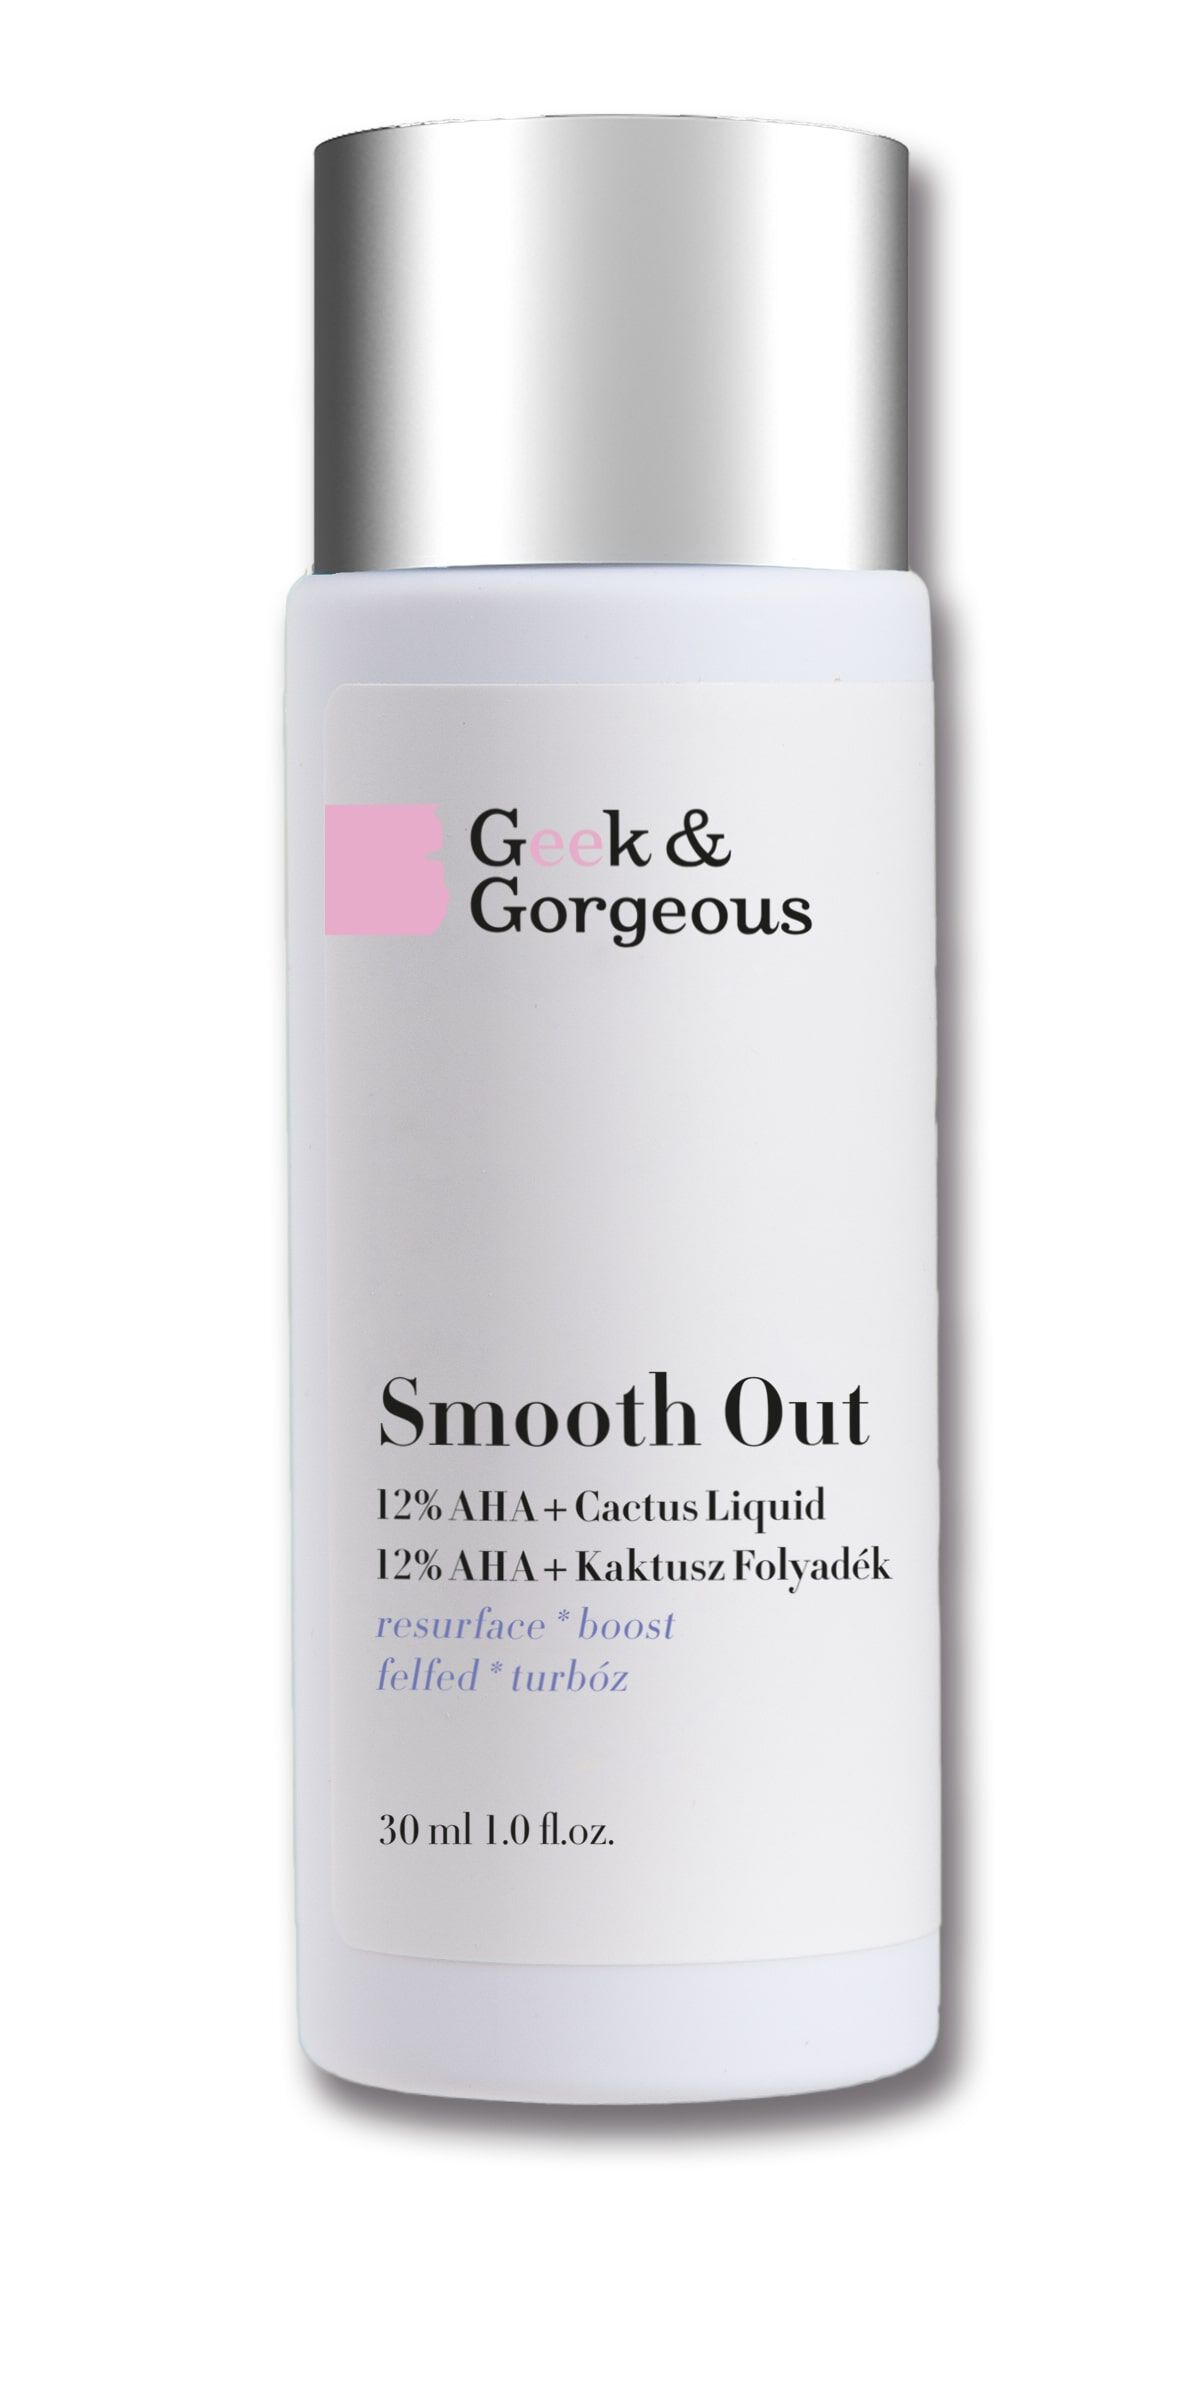 Geek & Gorgeous Smooth Out сильный пилинг для лица с 12% AHA кислотами и успокаивающей опунцией, 30 мл